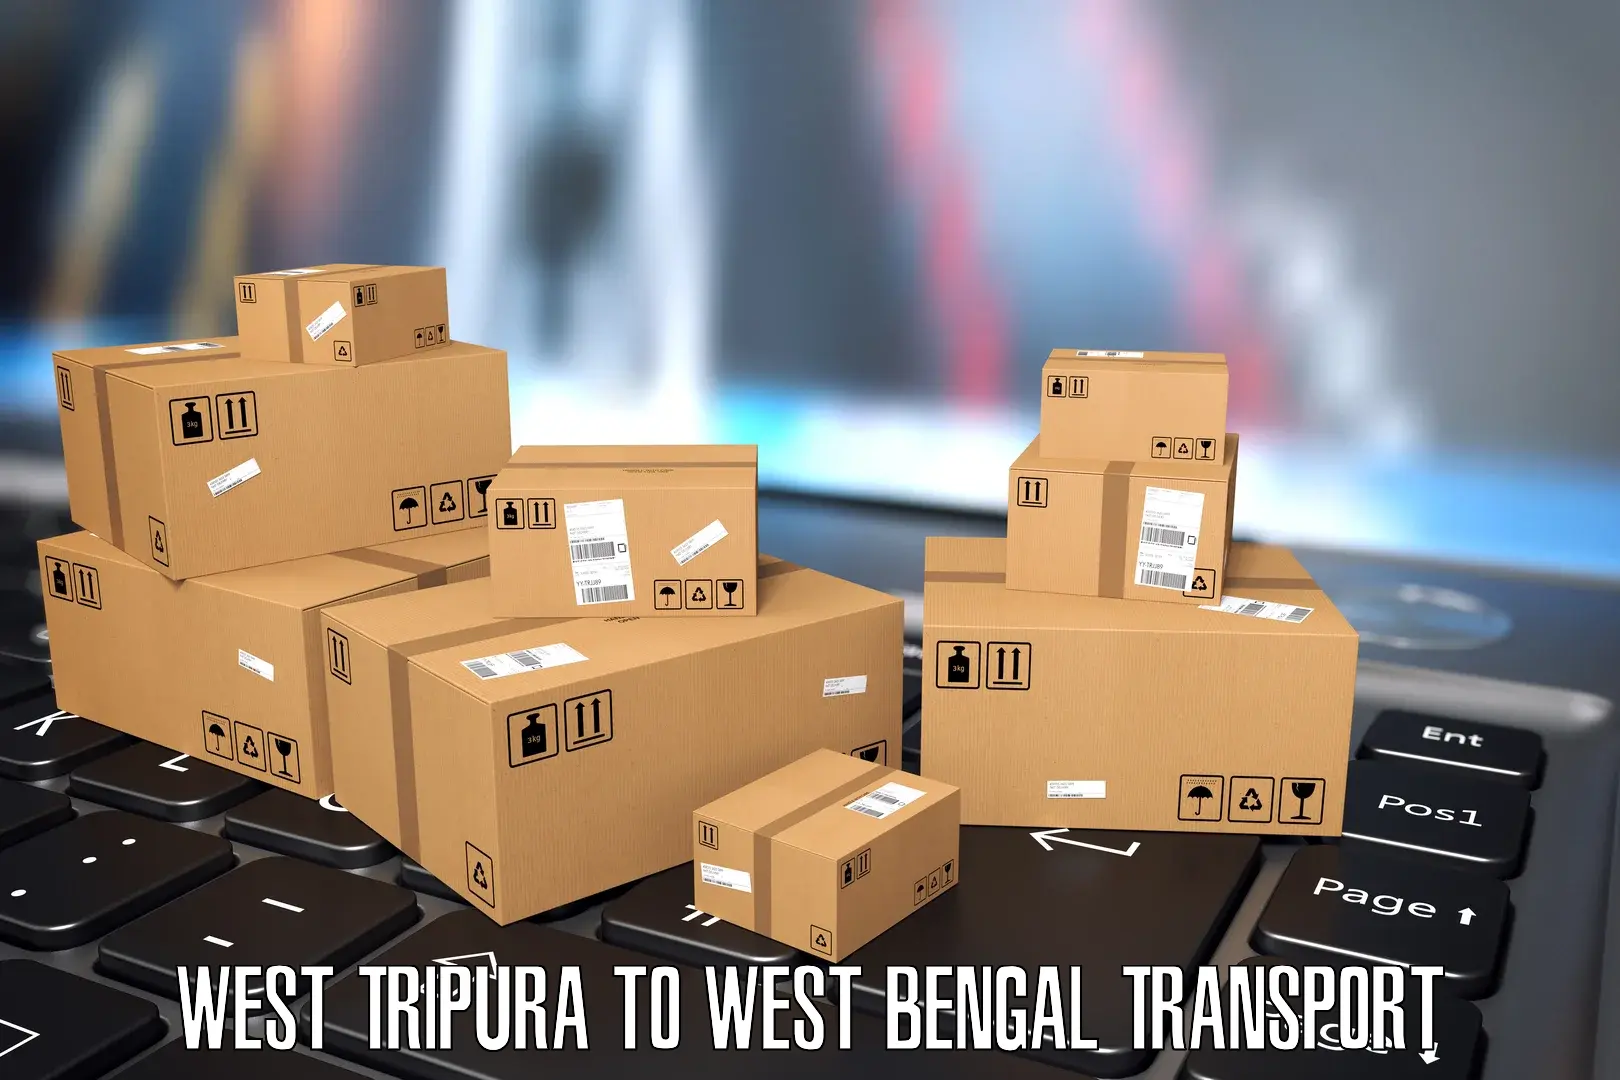 Nearby transport service West Tripura to Bajkul